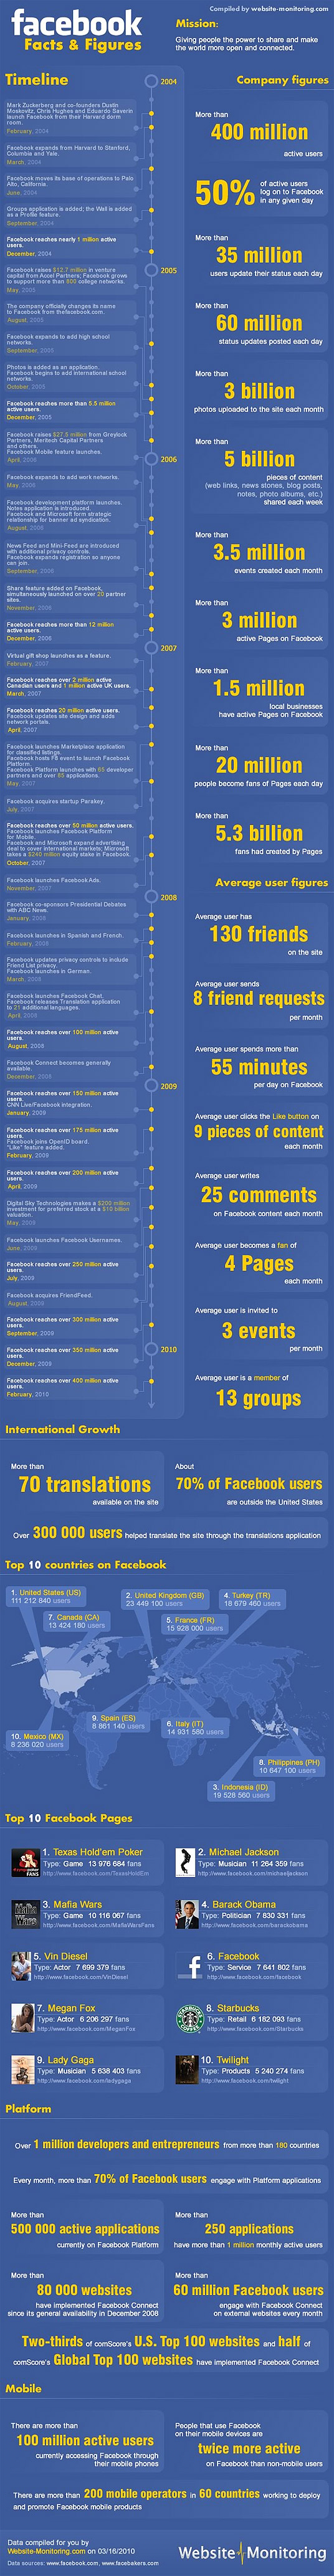 Facebook-Statistics-2010